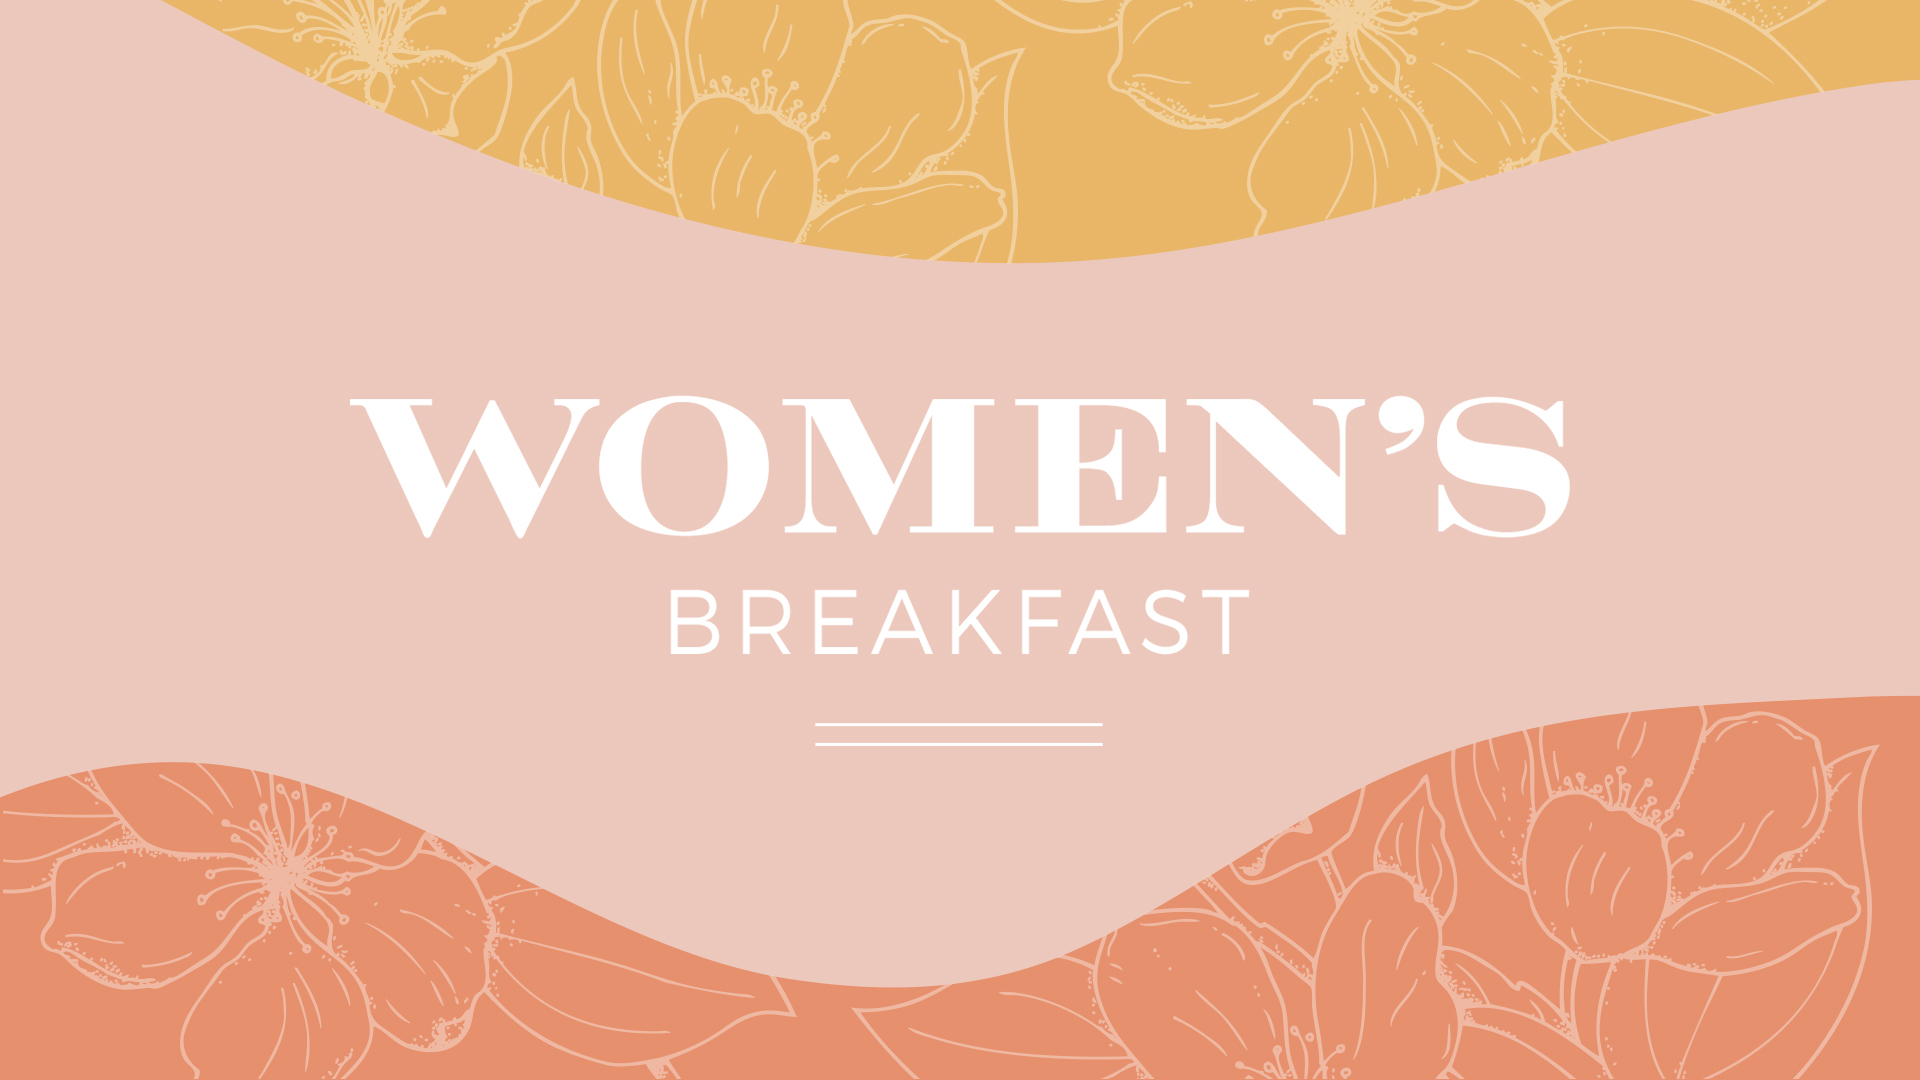 Women's Breakfast HD Title Slide image